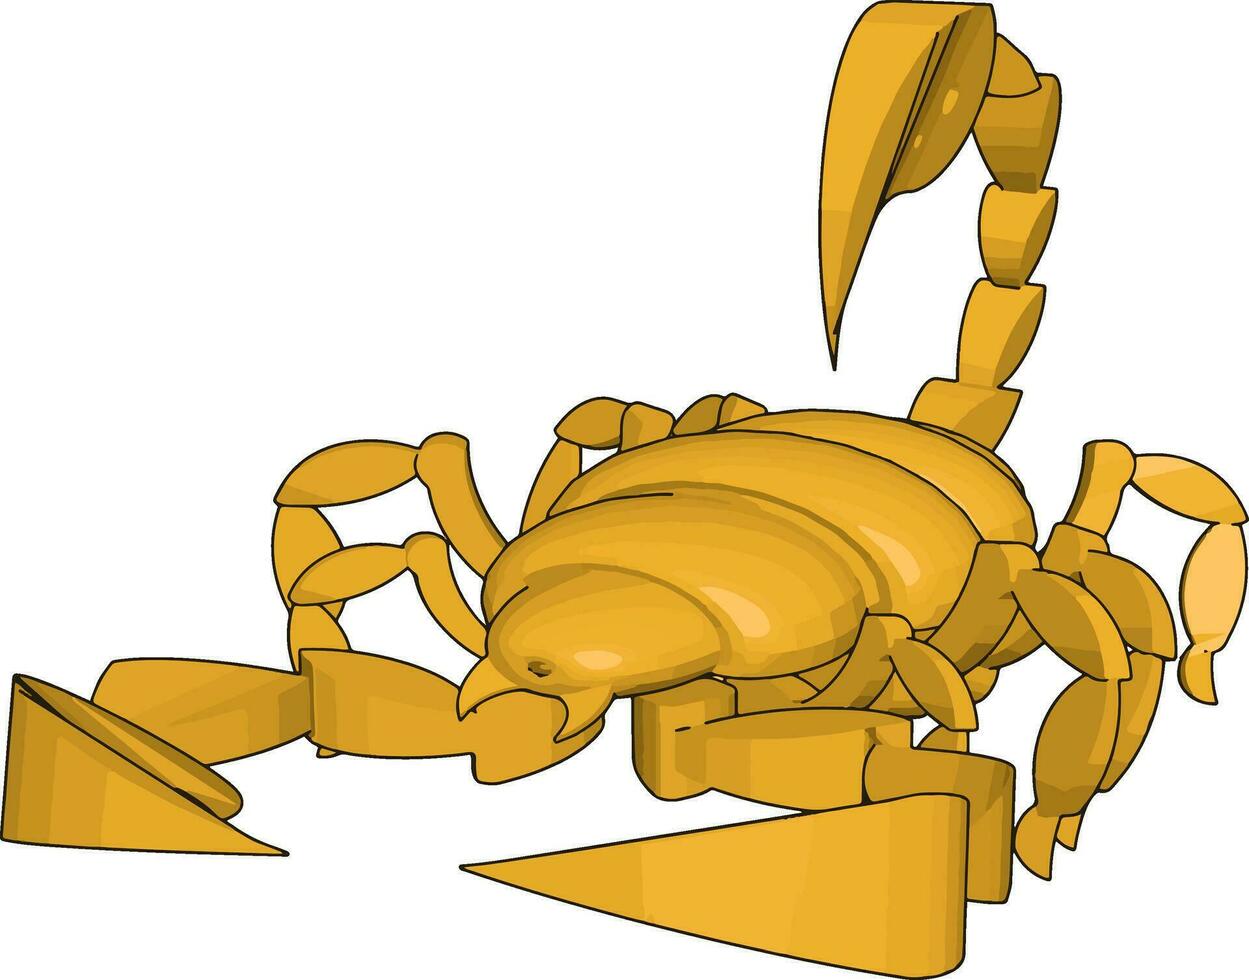 modo de un escorpión 3d, ilustración, vector sobre fondo blanco.